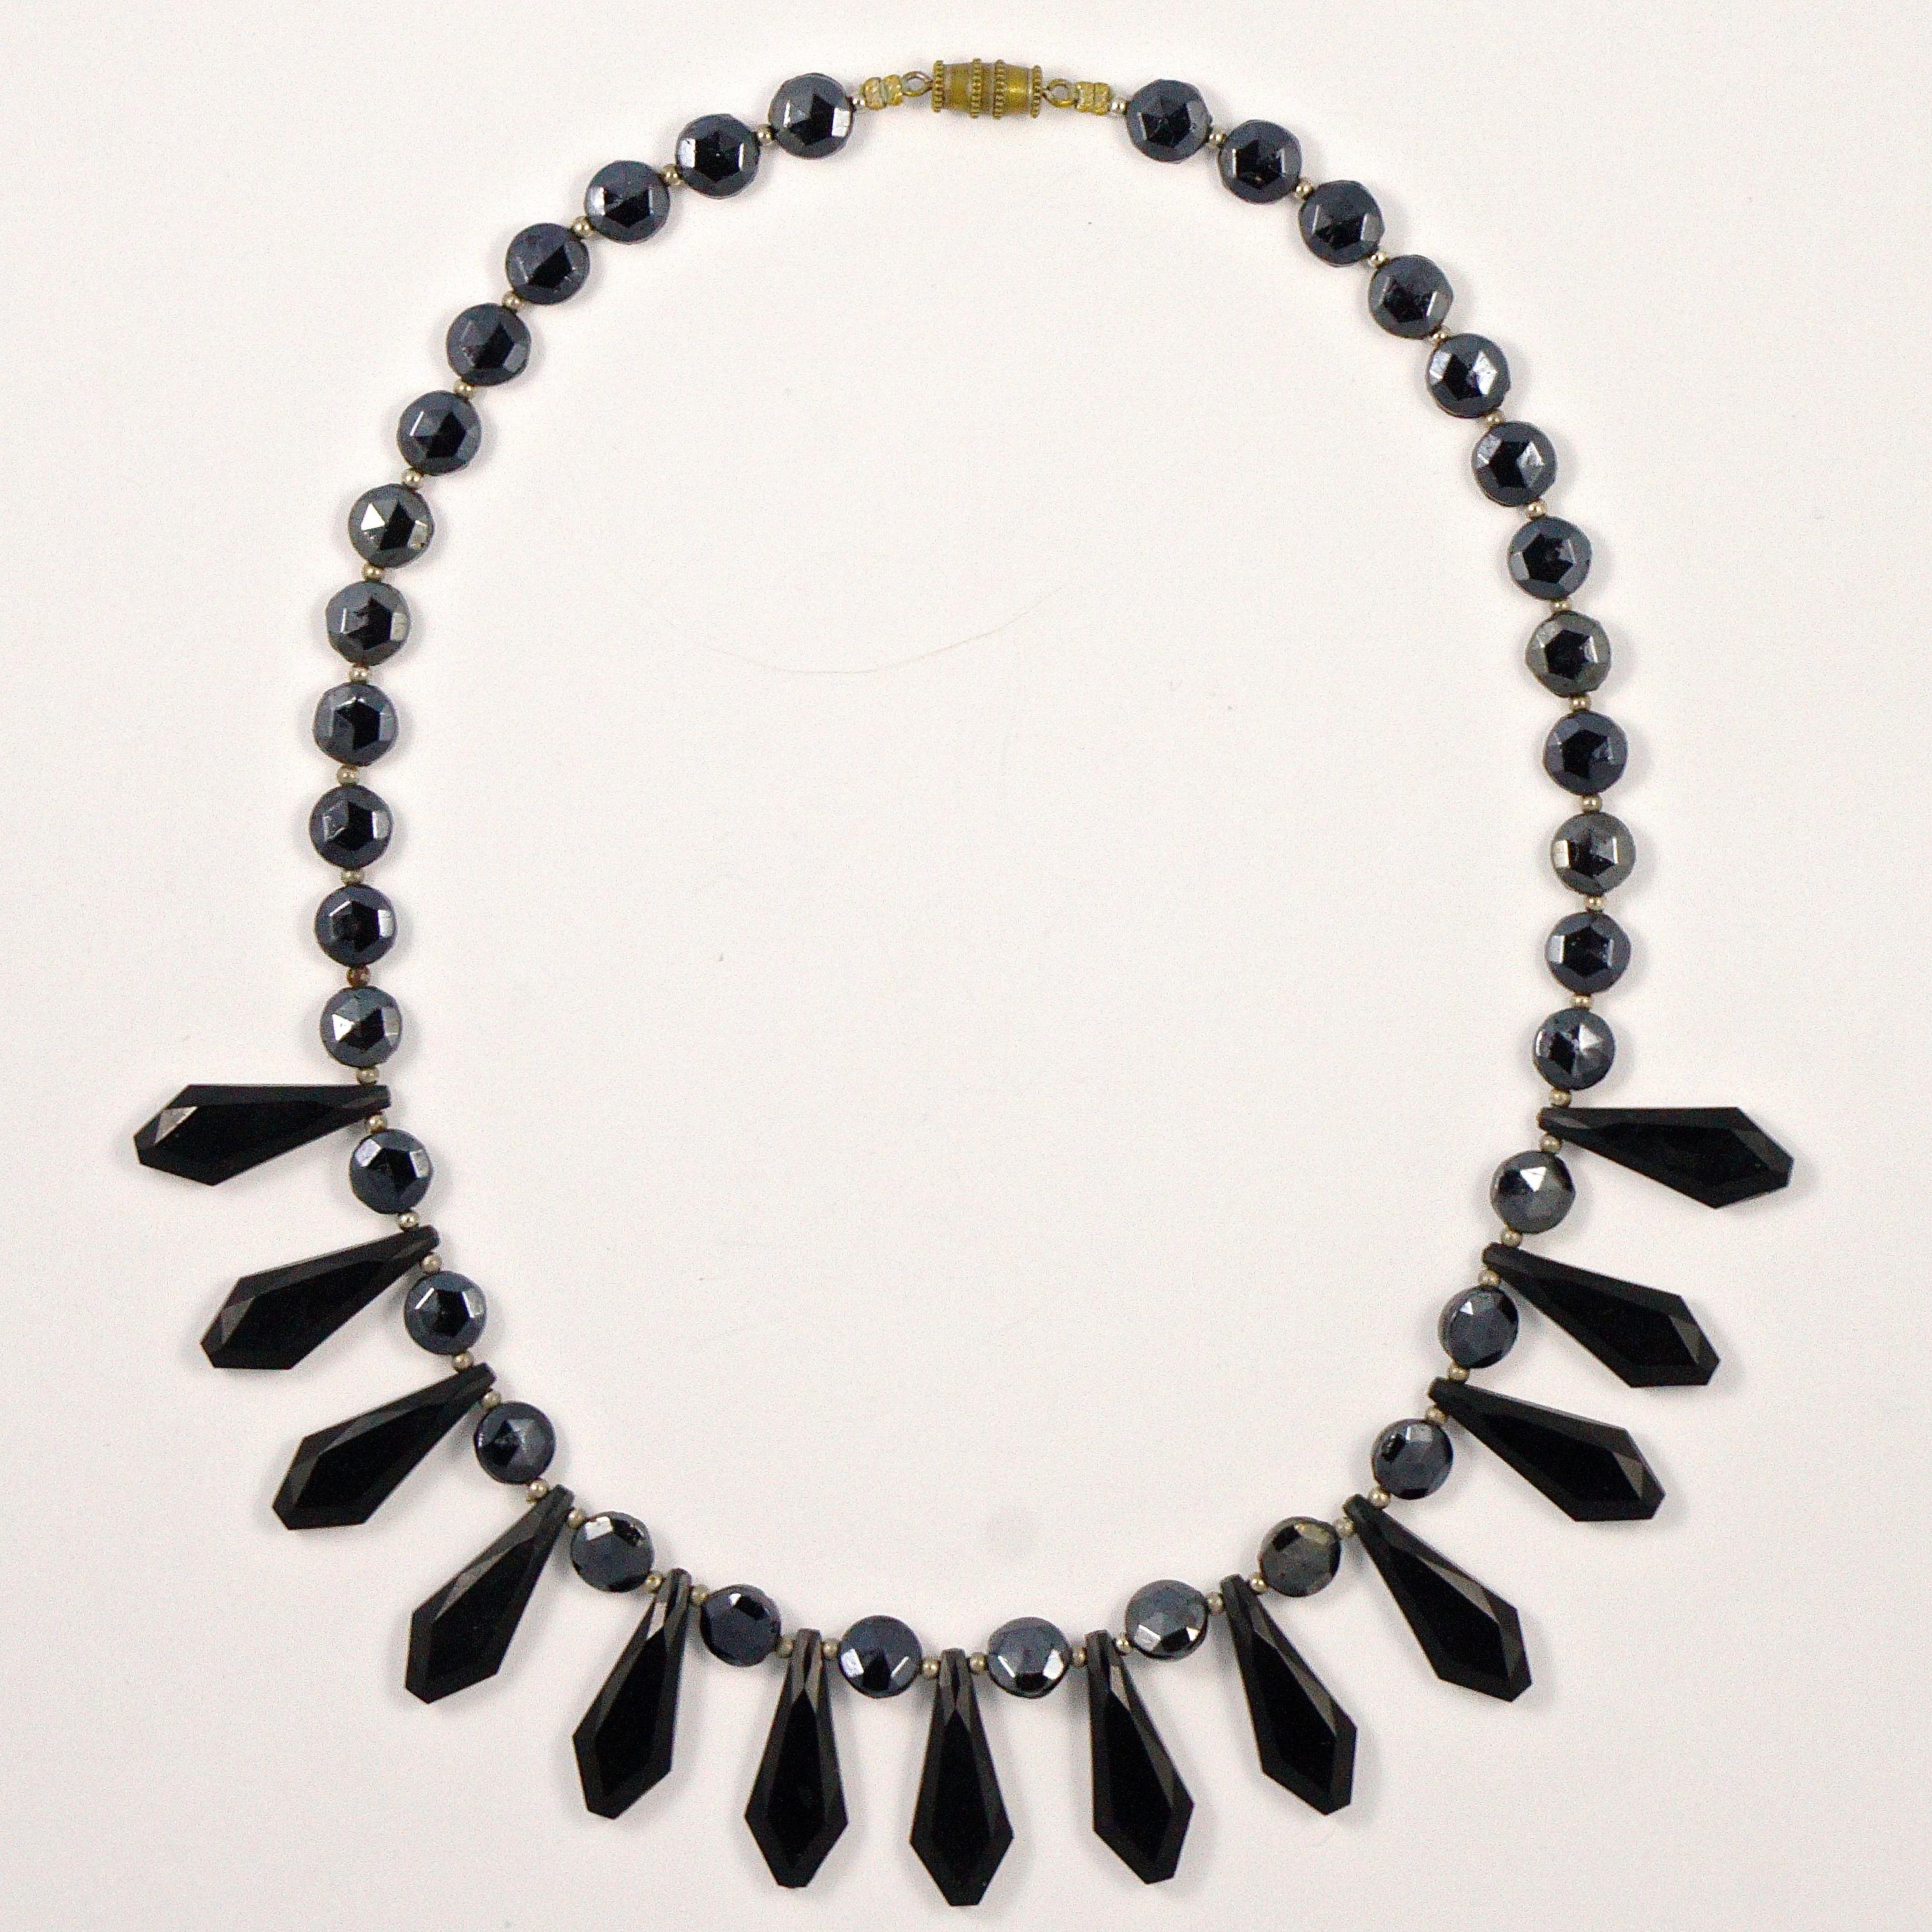 
Art-Deco-Halskette aus französischem Jet mit facettierten schwarzen Glastropfen und dunkelgrauen runden Perlen, die mit kleinen silberfarbenen Perlen durchsetzt sind. Die Halskette wird mit einem Karabinerverschluss geschlossen. Mit einer Länge von